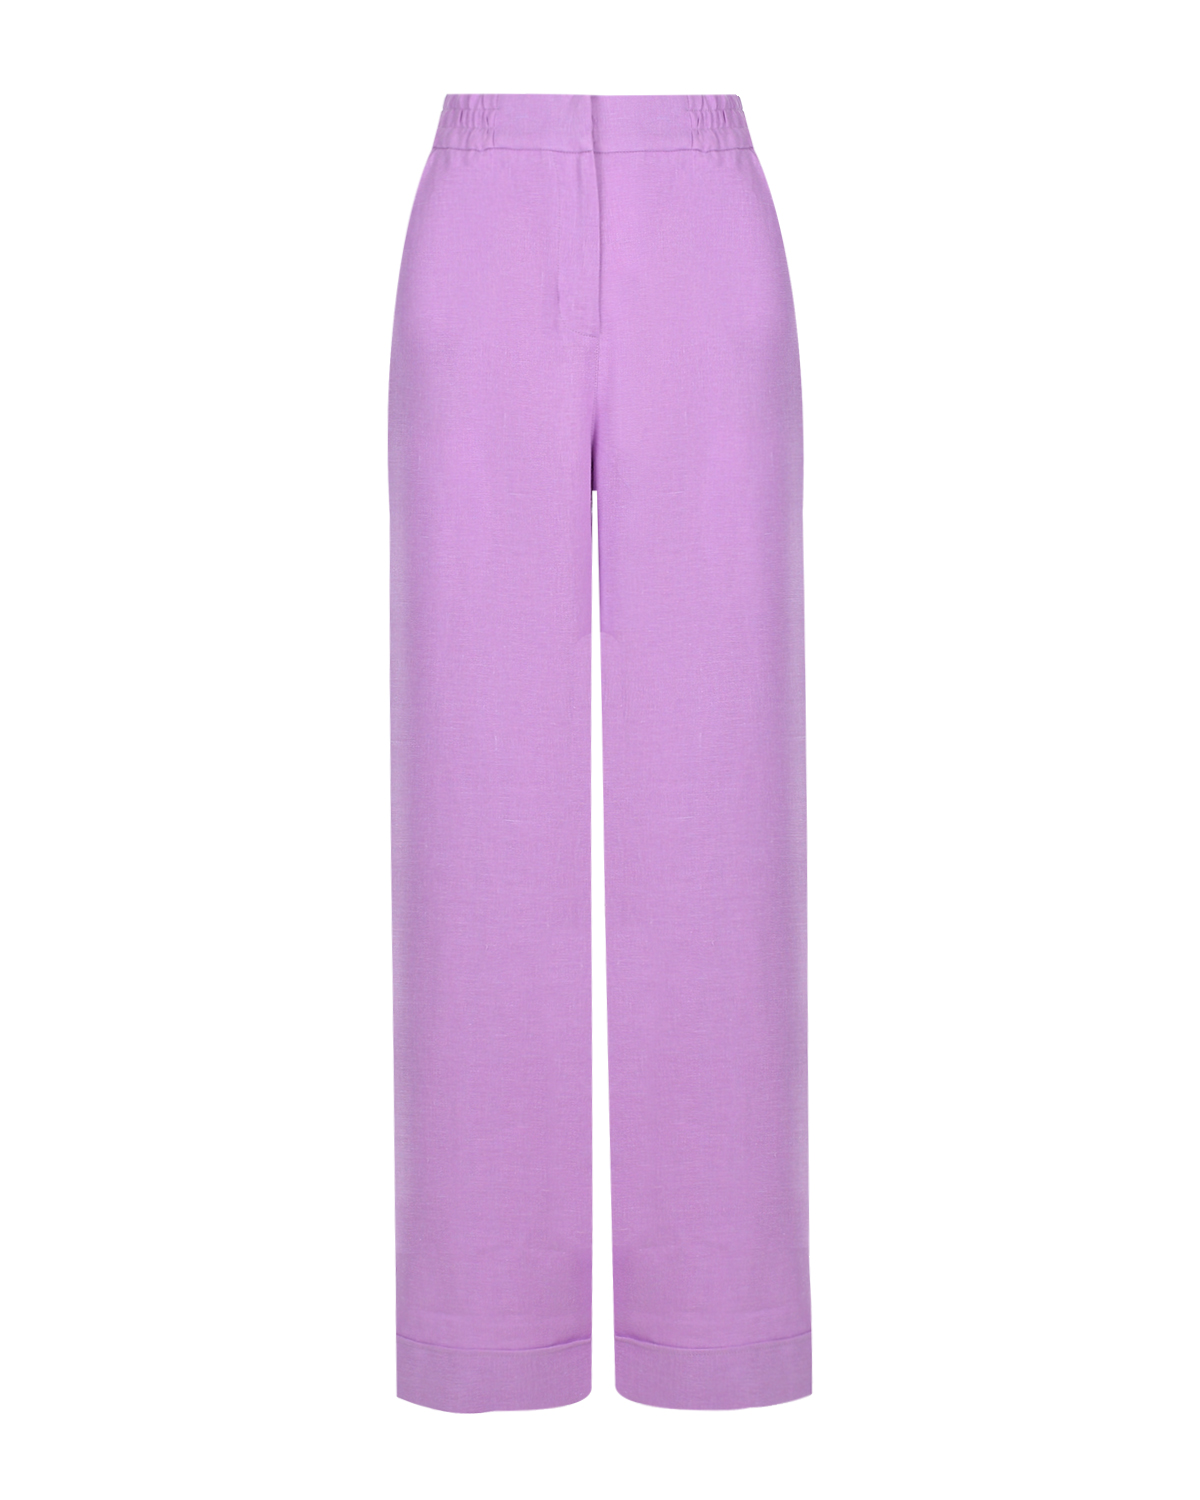 Льняные брюки лавандового цвета ALINE, размер 44 - фото 1